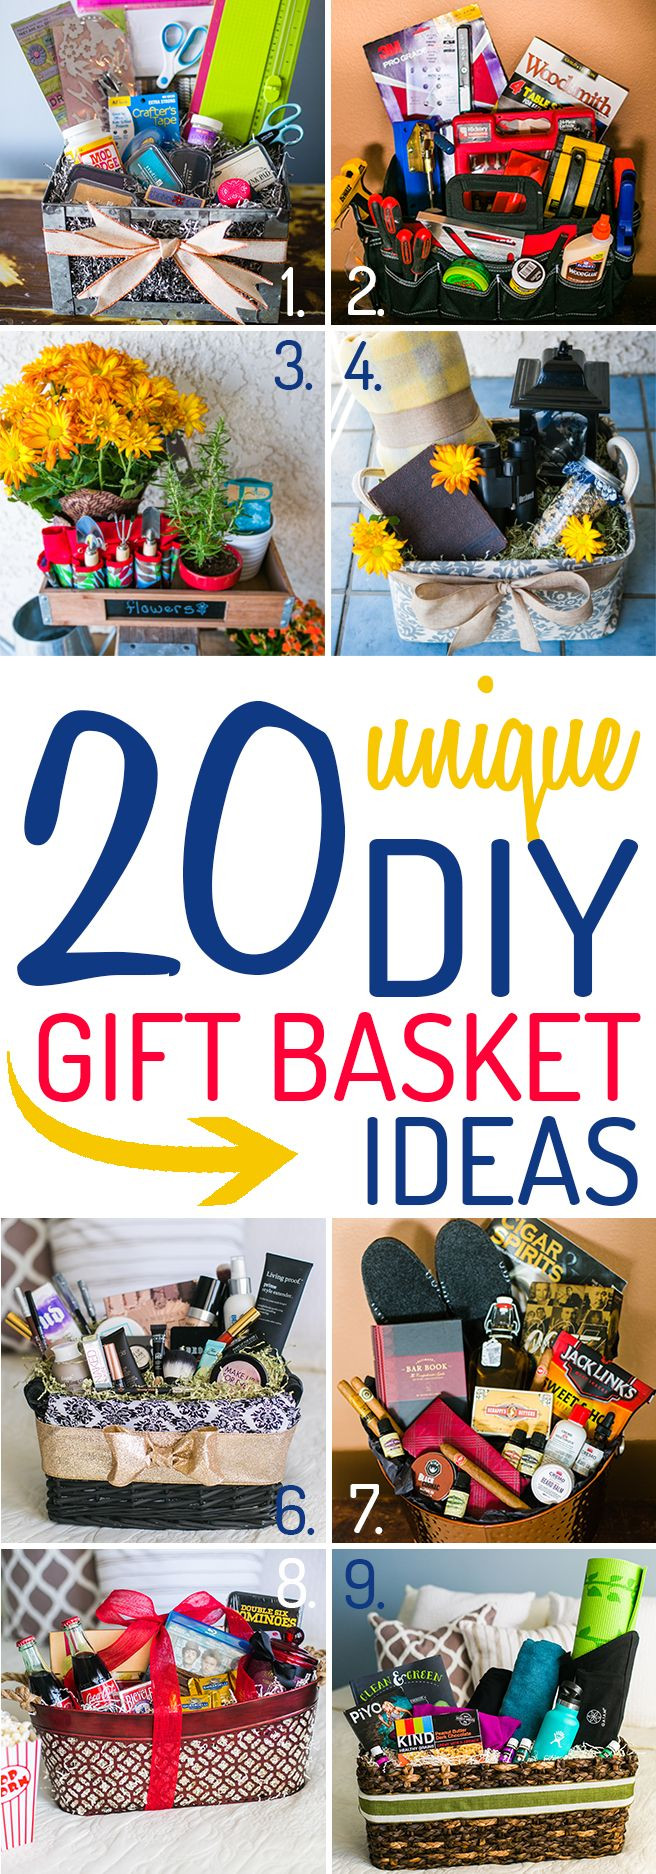 Best ideas about Unique Gift Basket Ideas
. Save or Pin 25 best Unique t basket ideas on Pinterest Now.